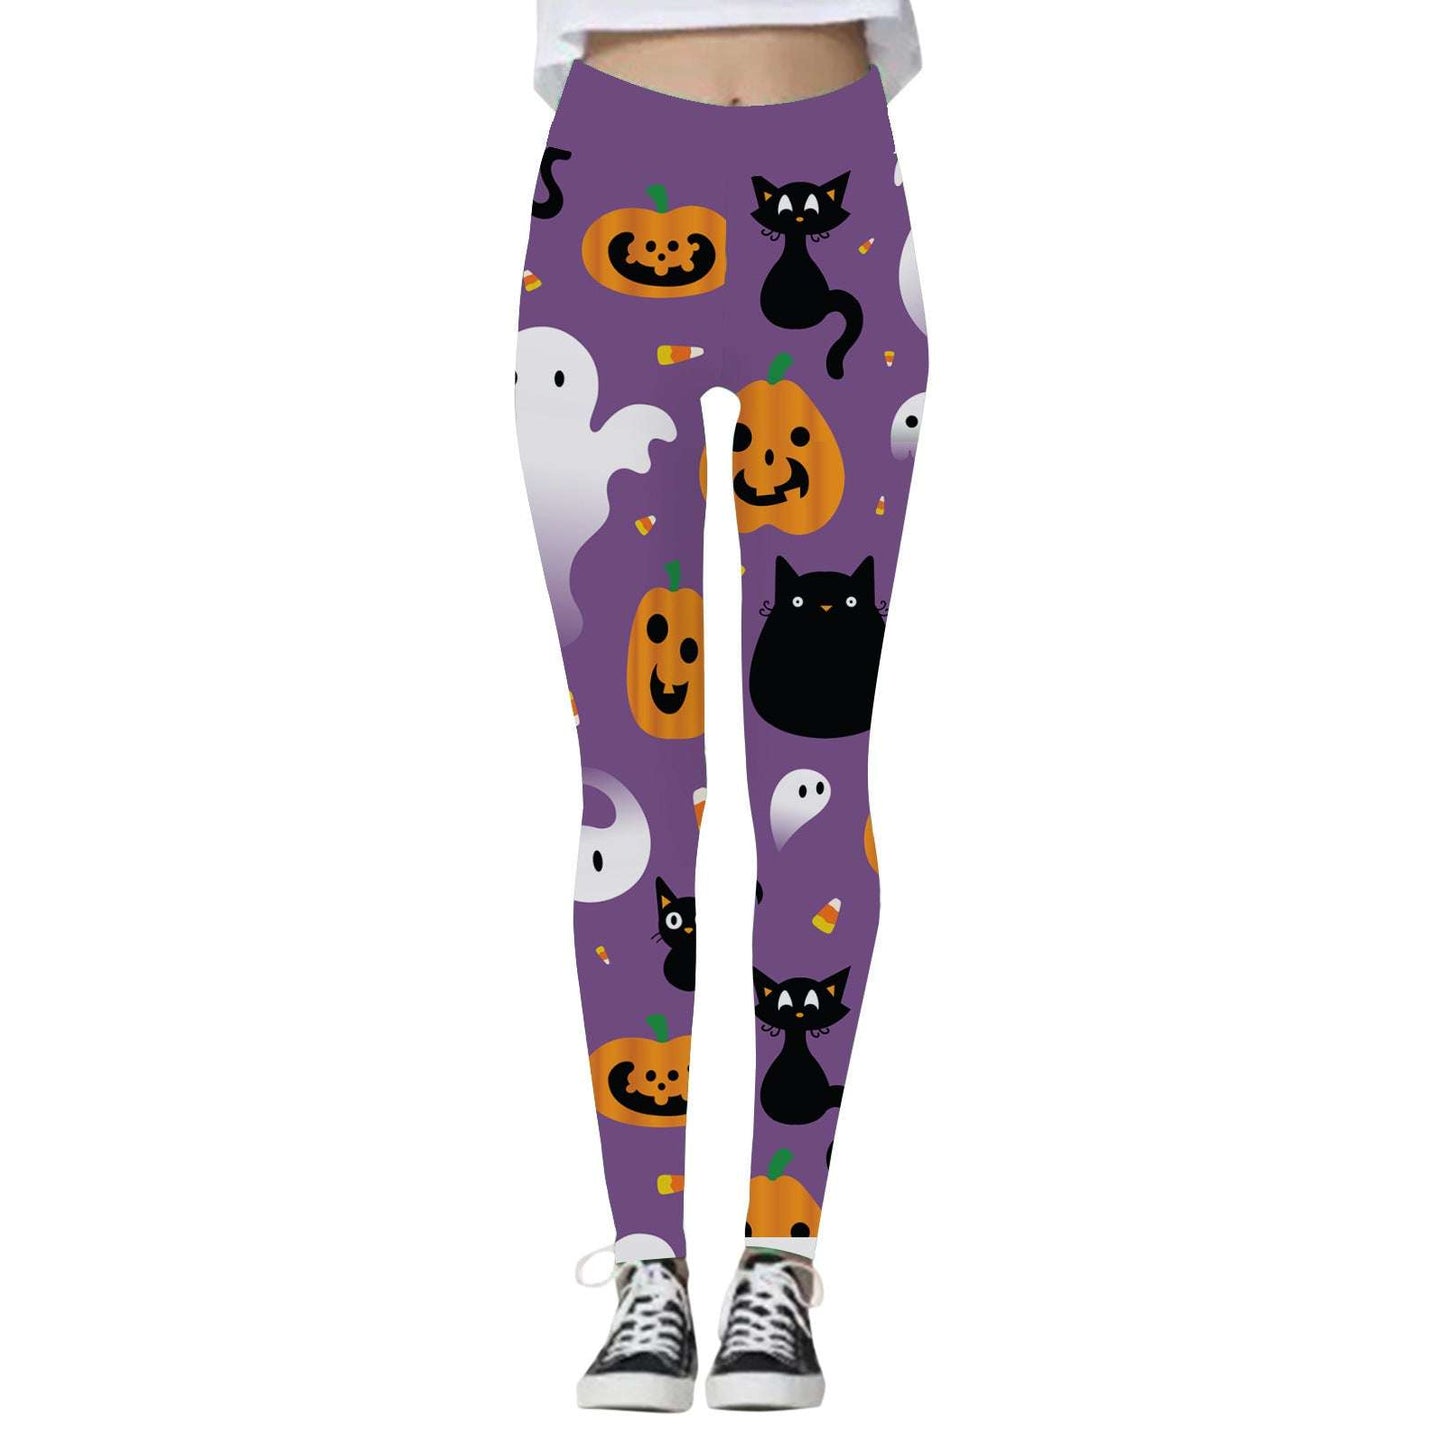 Halloween Leggings, High Waist Leggings, Sports Leggings - available at Sparq Mart